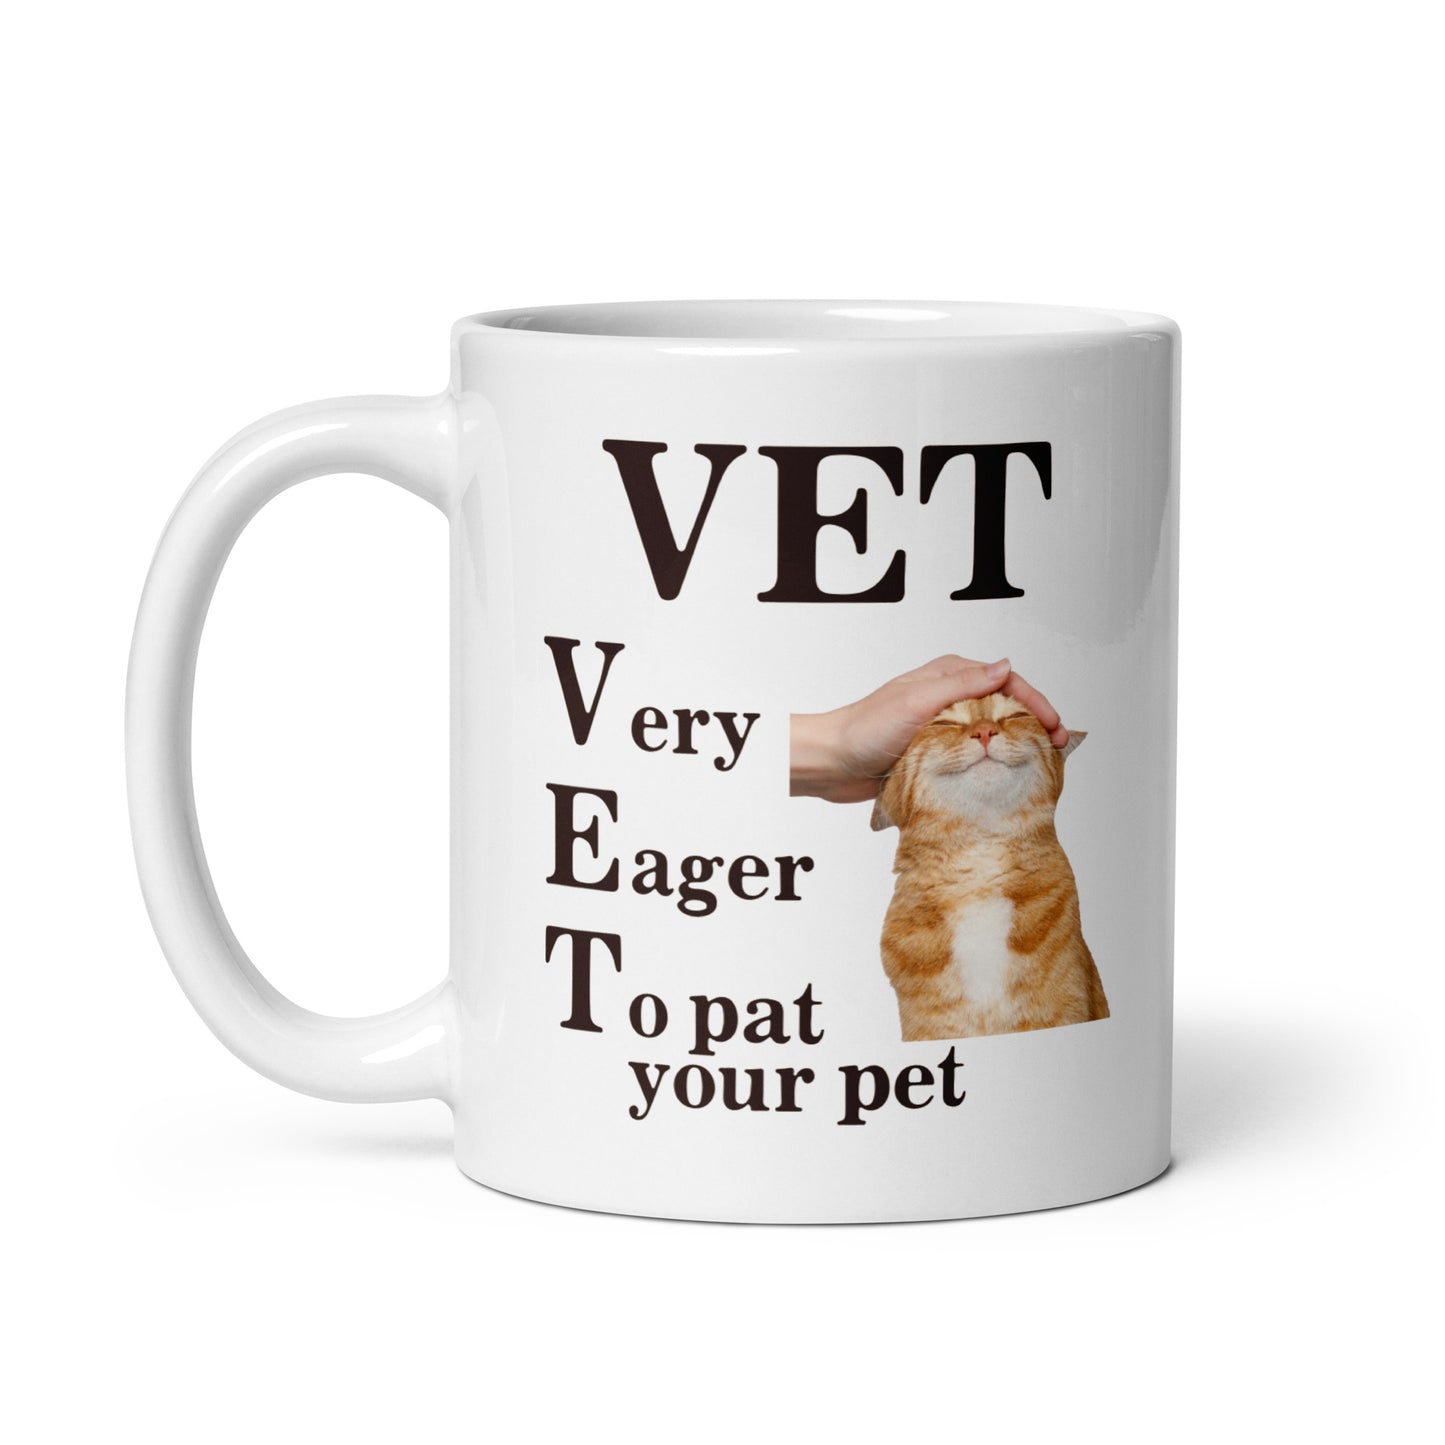 VET (Very Eager to Pat) mug